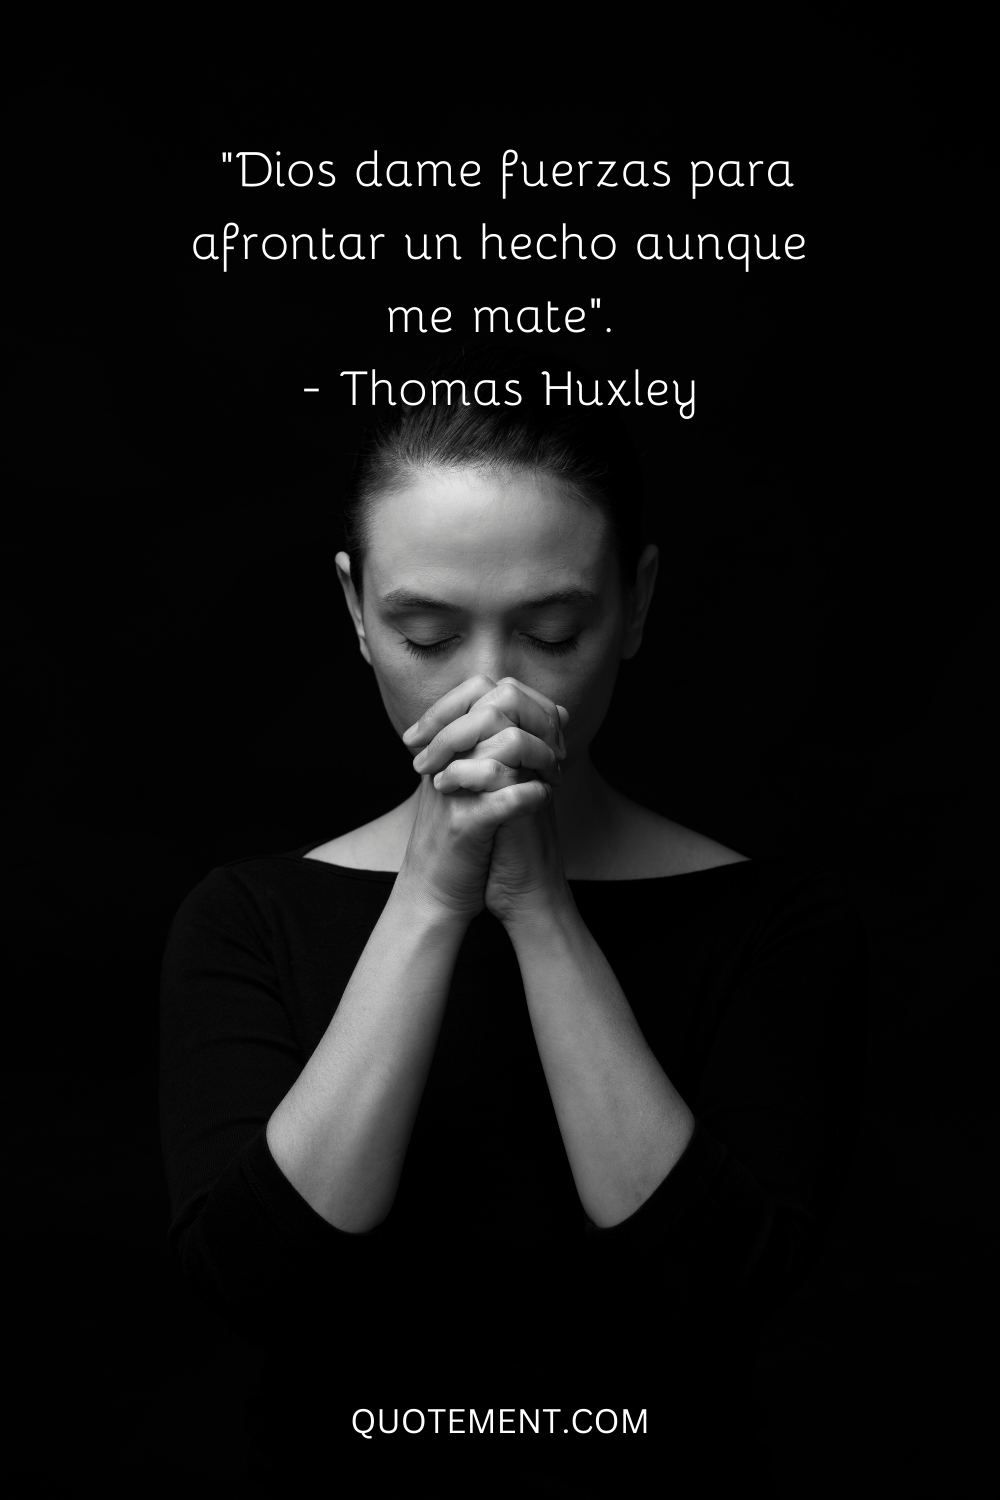 "Que Dios me dé fuerzas para afrontar un hecho aunque me mate". - Thomas Huxley